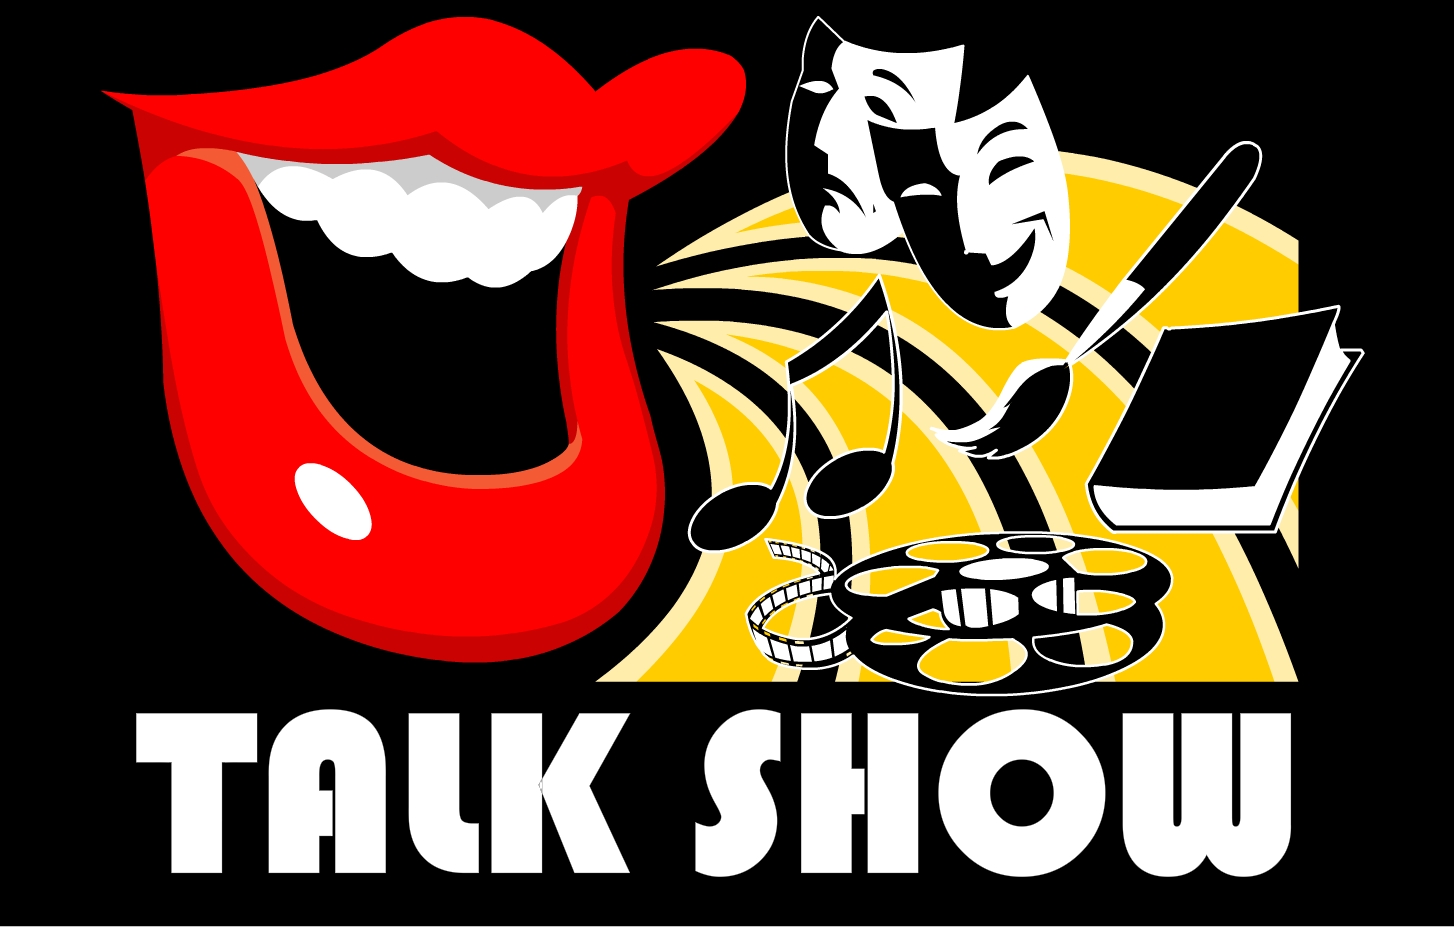 Talk-show (spettacolo di conversazione o di parole)